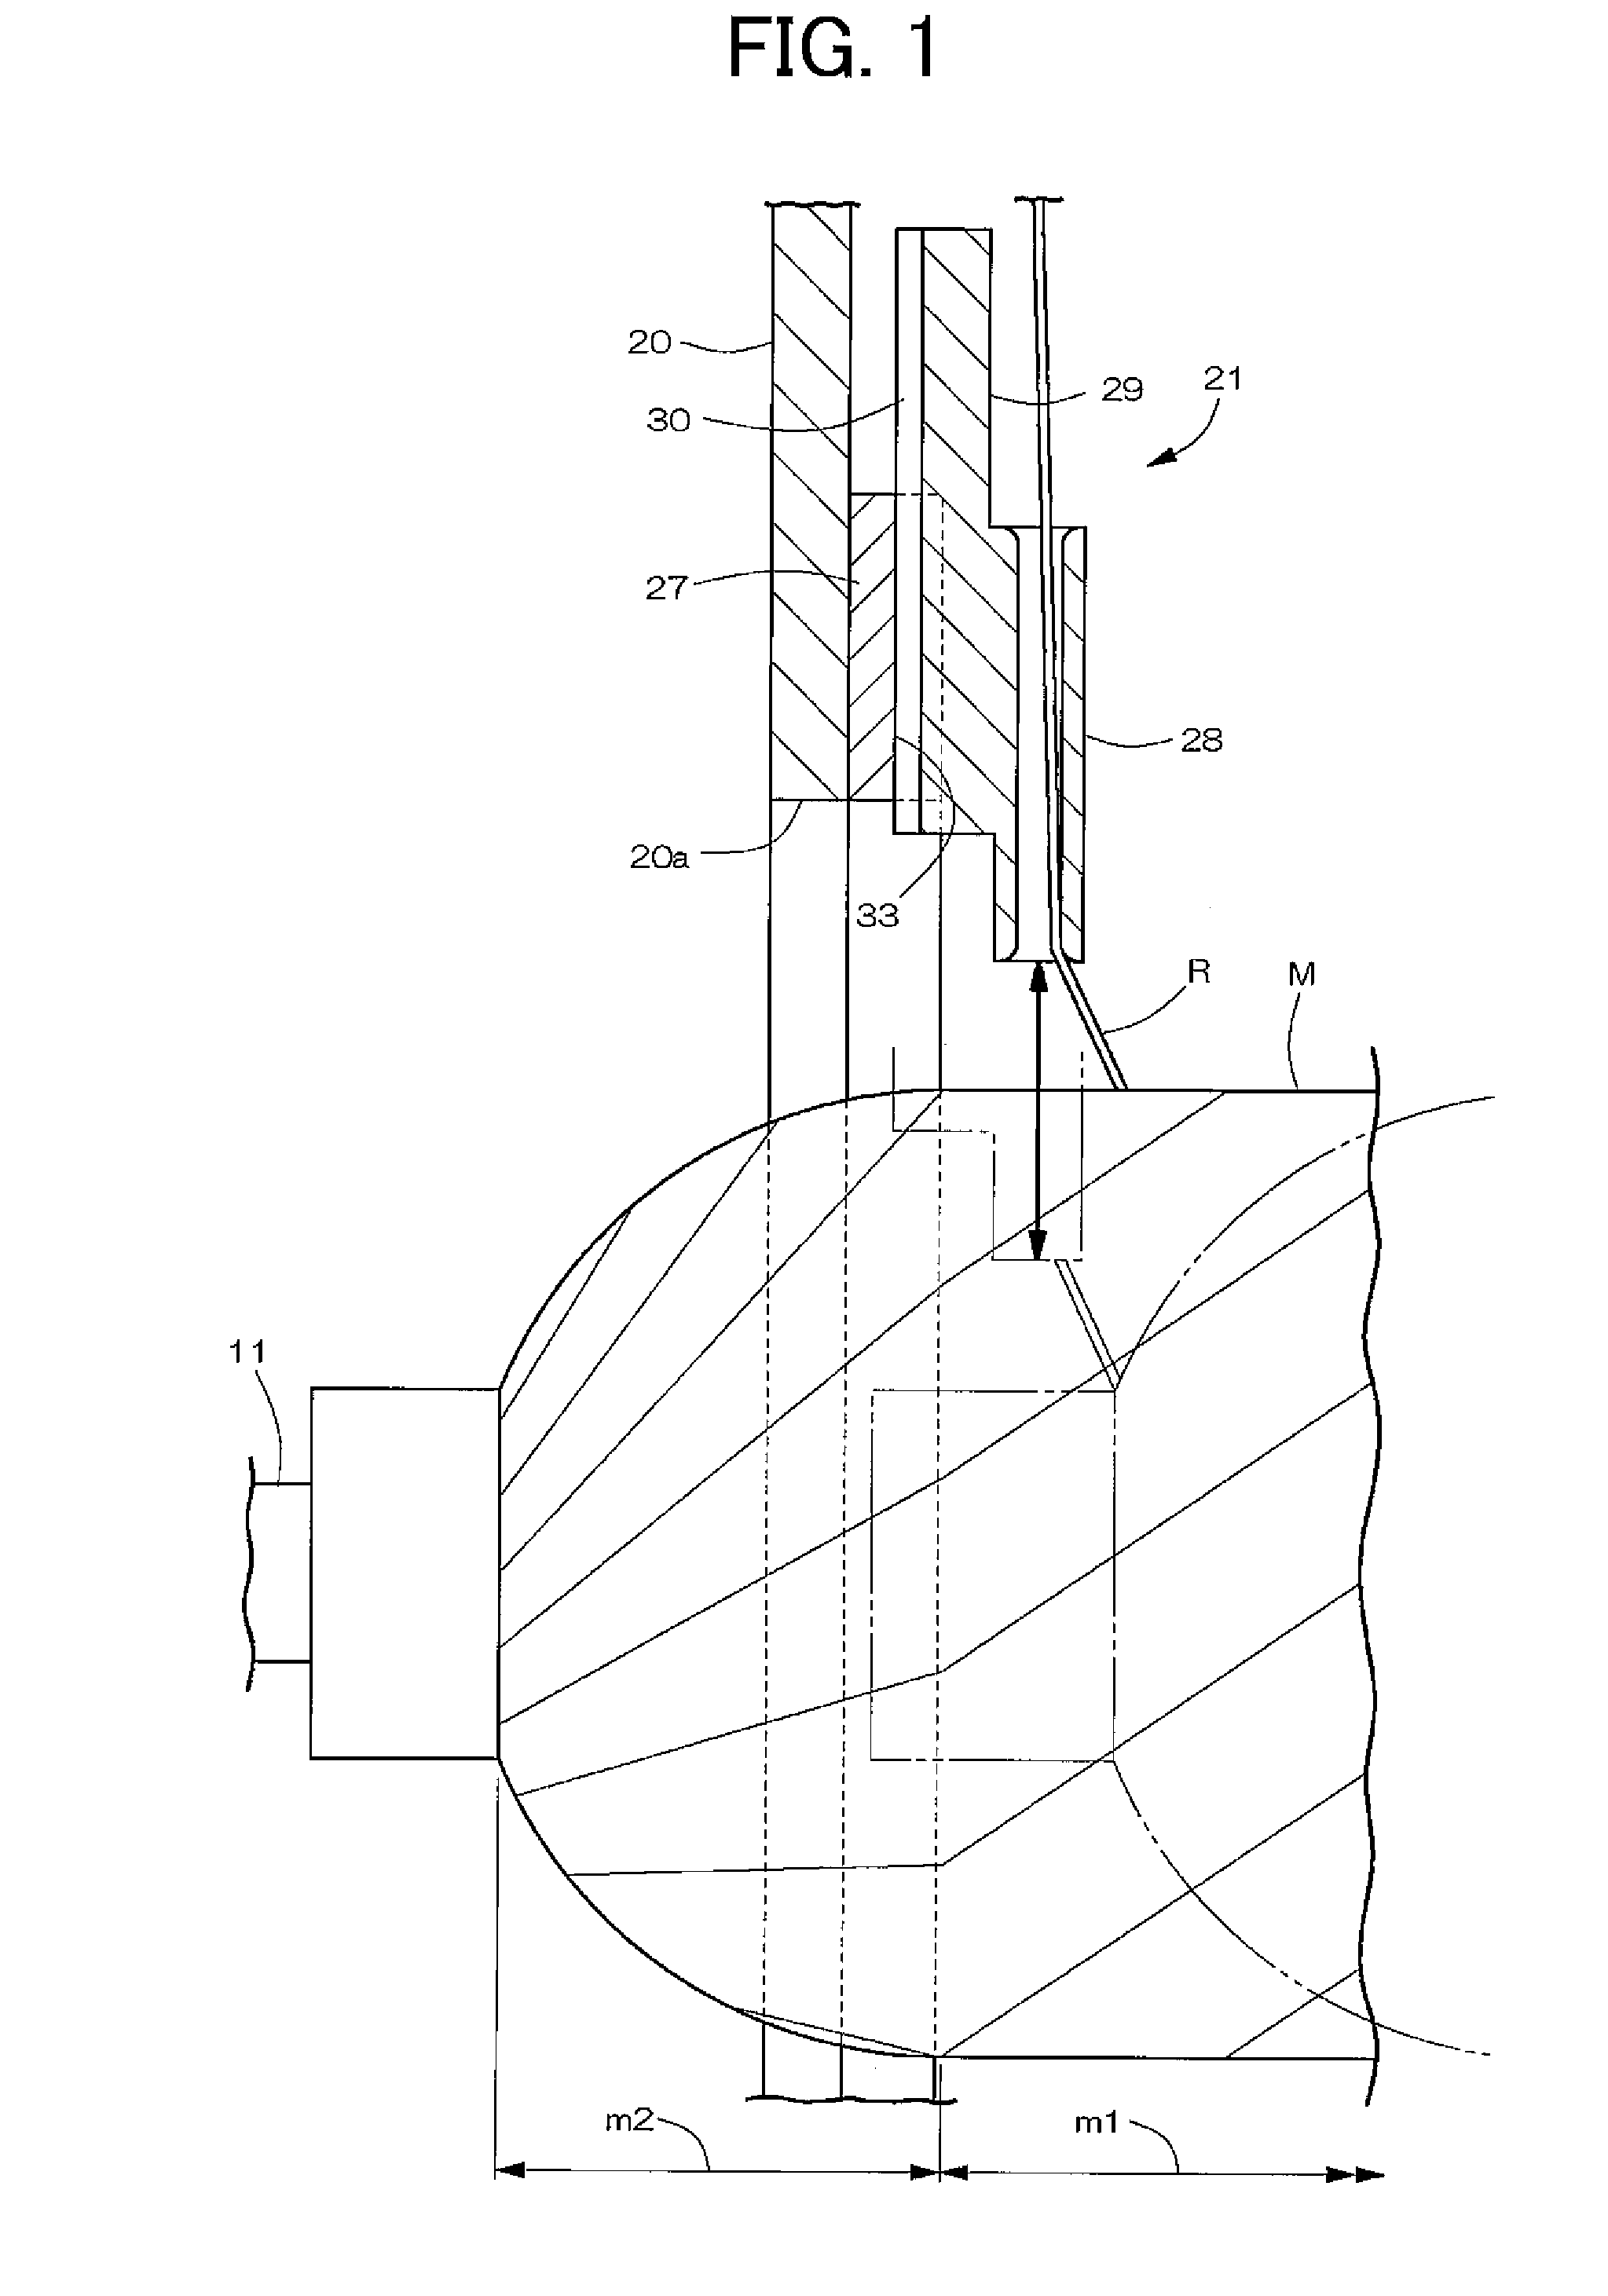 Filament winding apparatus